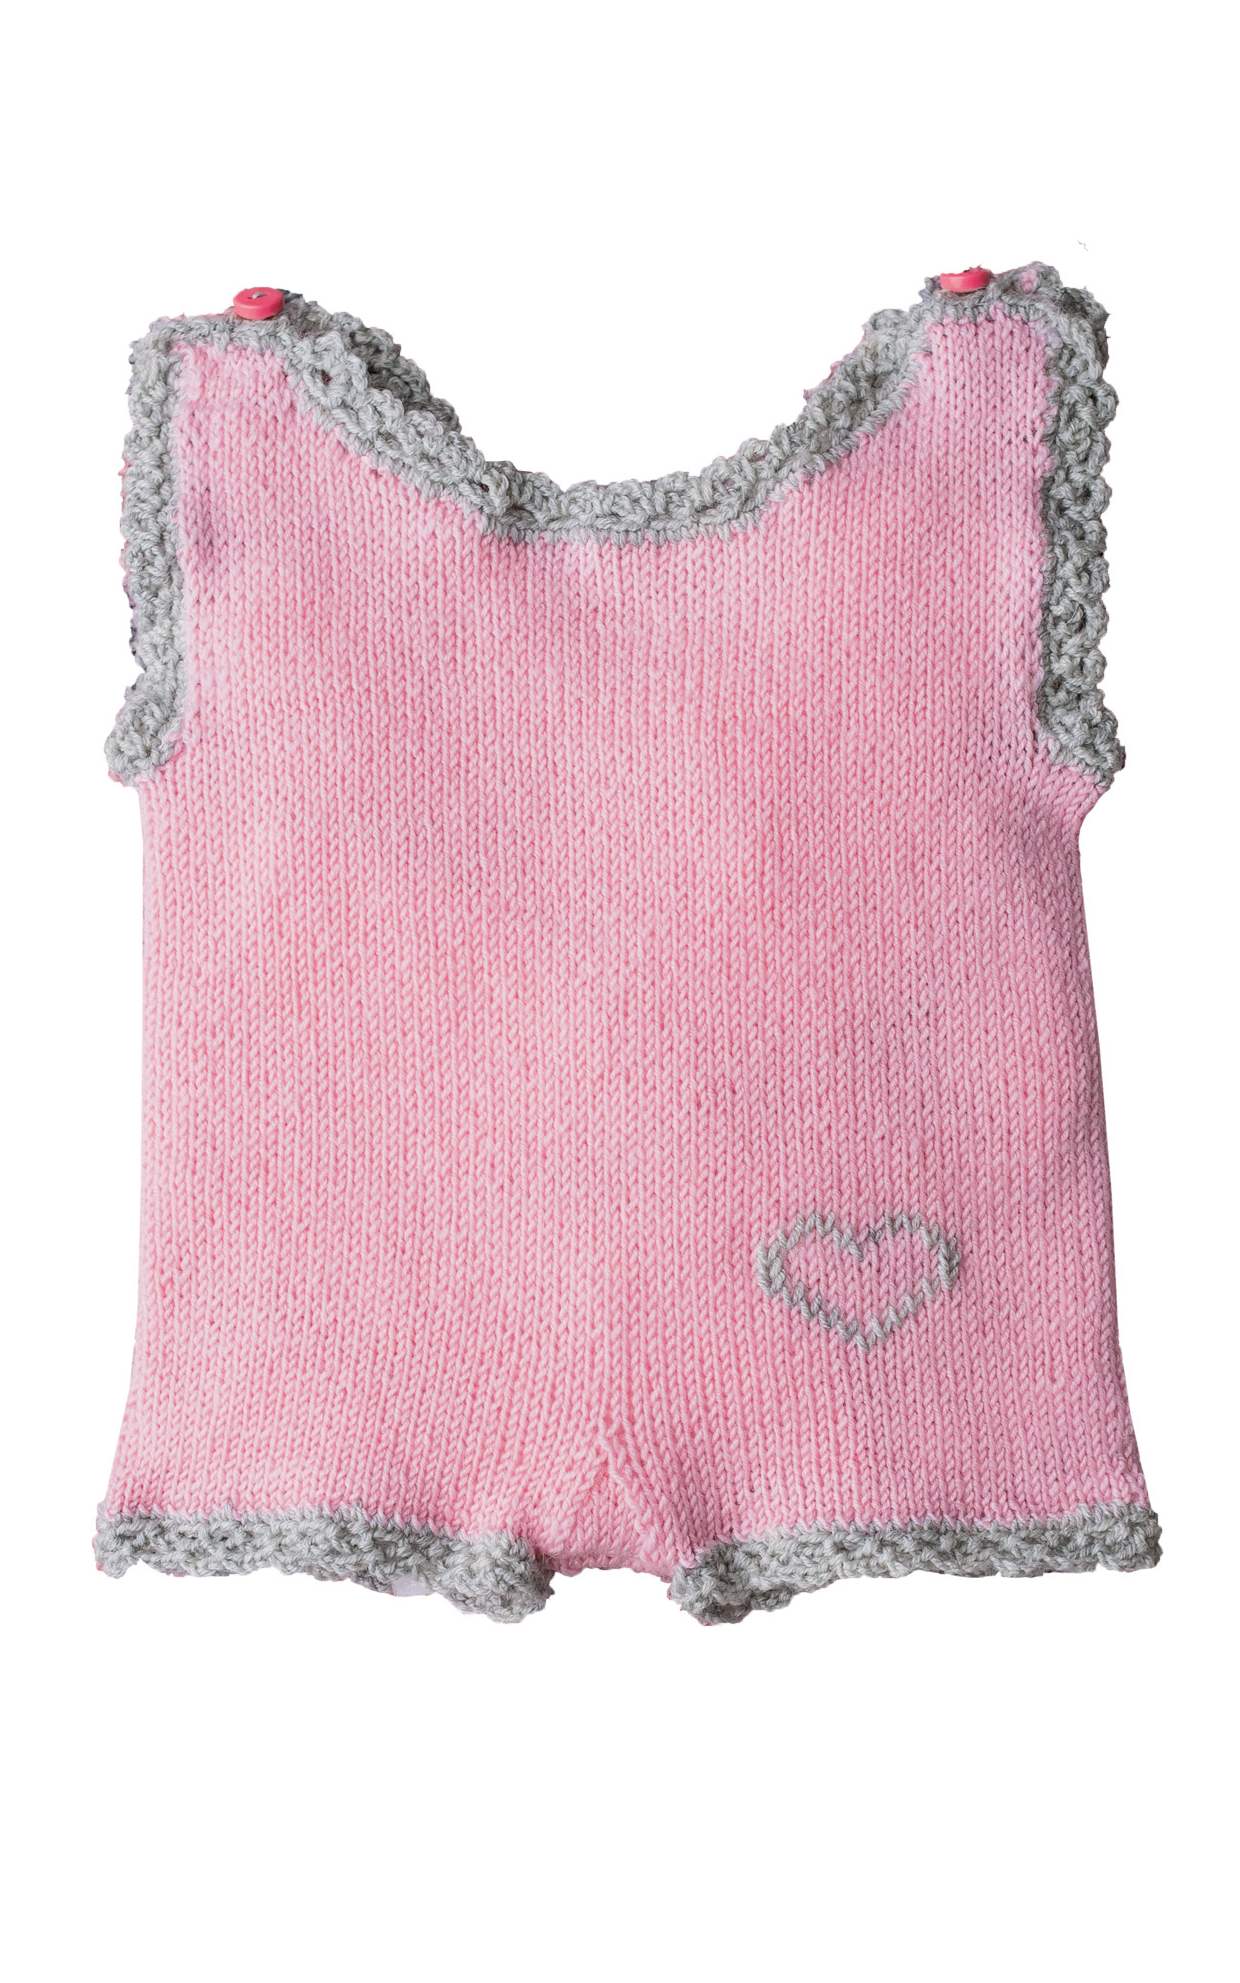 Baby Body mit Herzchen - Strickset von LANA GROSSA jetzt online kaufen bei OONIQUE